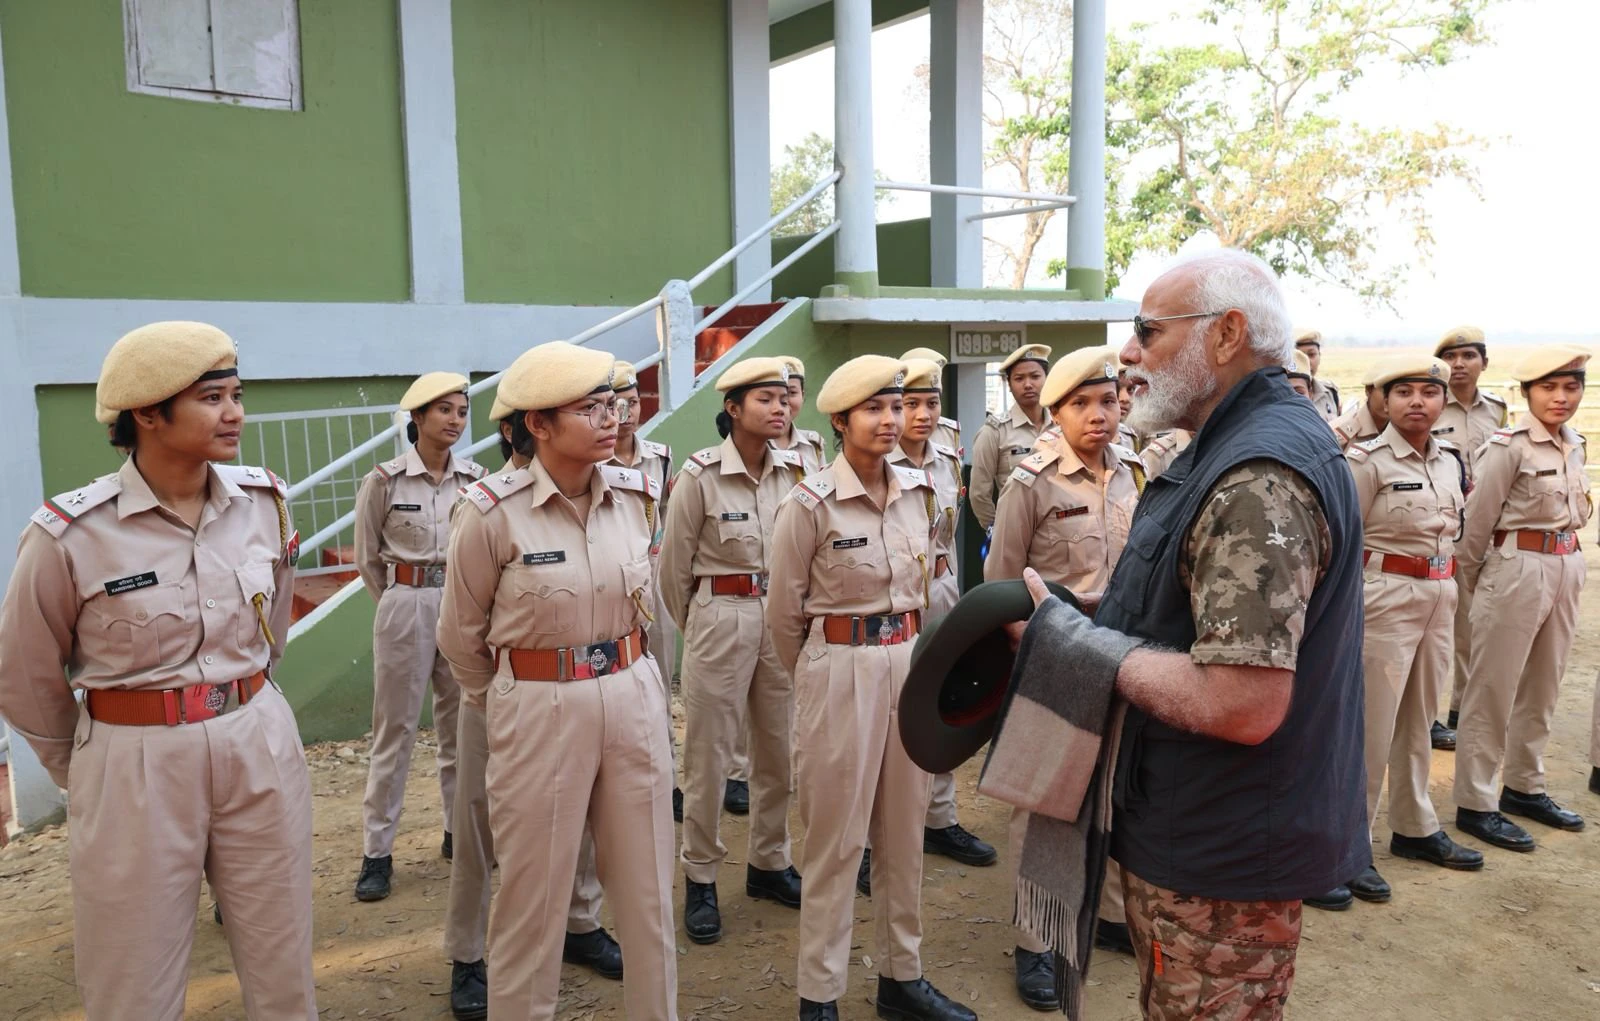 PM Modi visited Kaziranga National Park in Assam